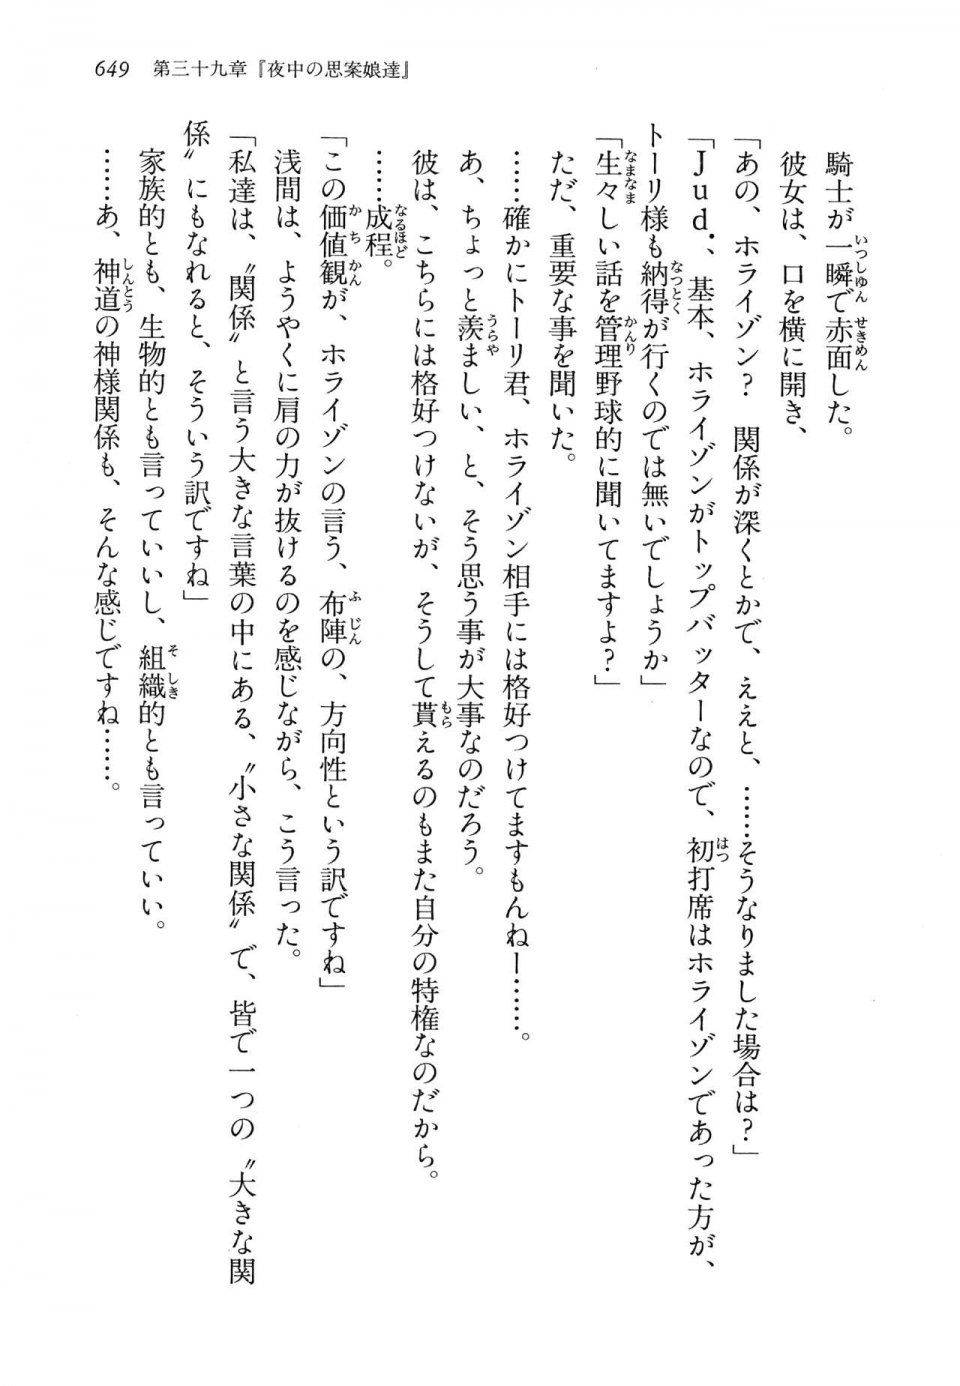 Kyoukai Senjou no Horizon LN Vol 14(6B) - Photo #649